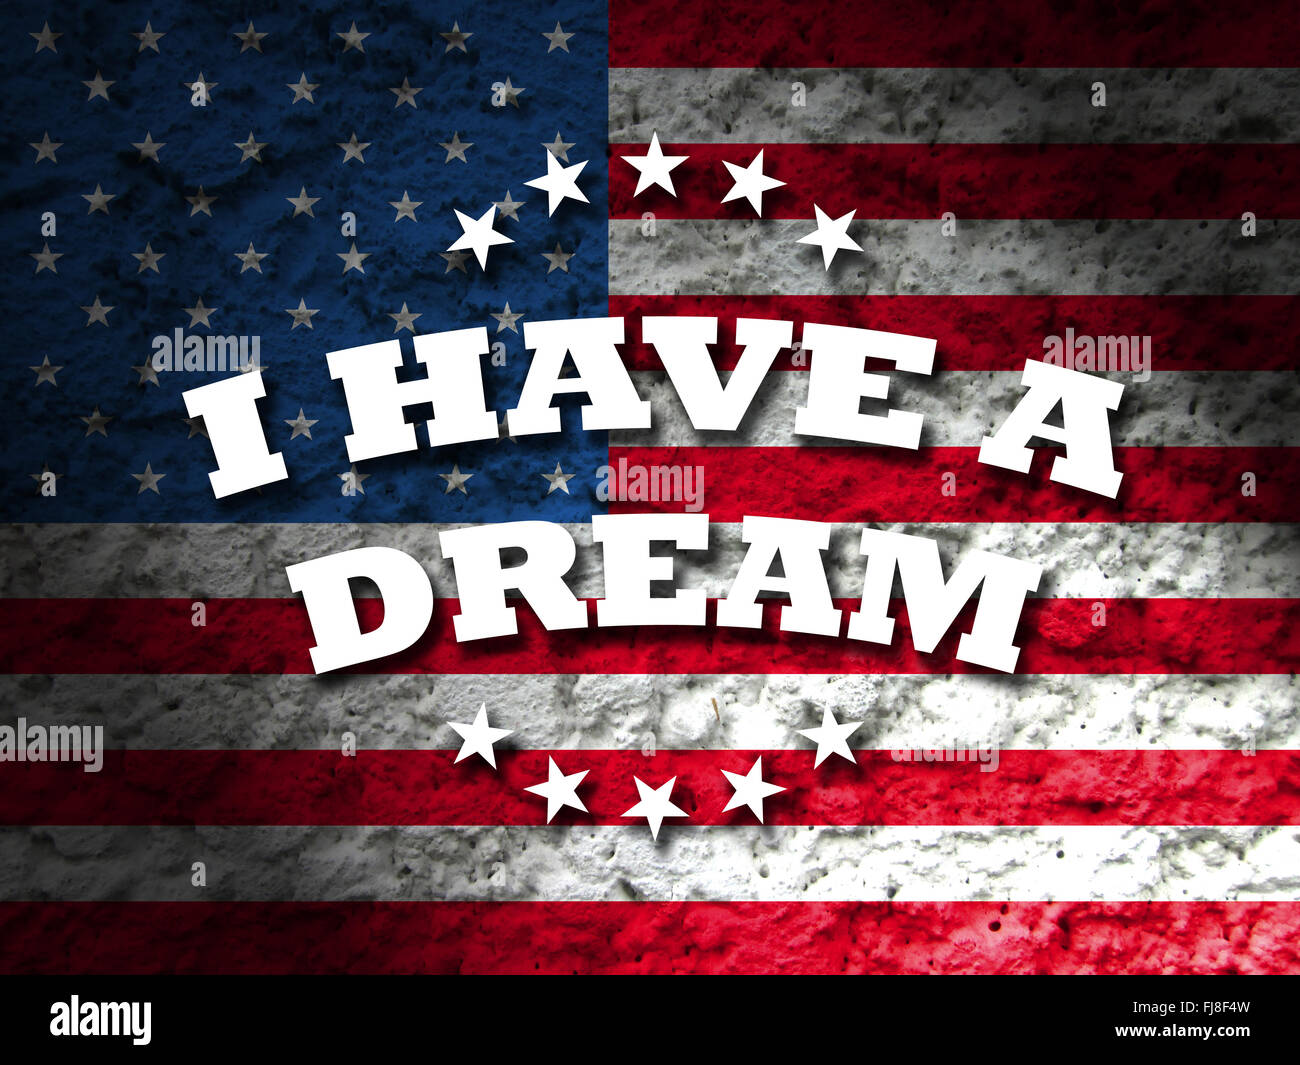 La Journée Martin Luther King, j'ai une carte de rêve avec le drapeau américain grunge background Banque D'Images